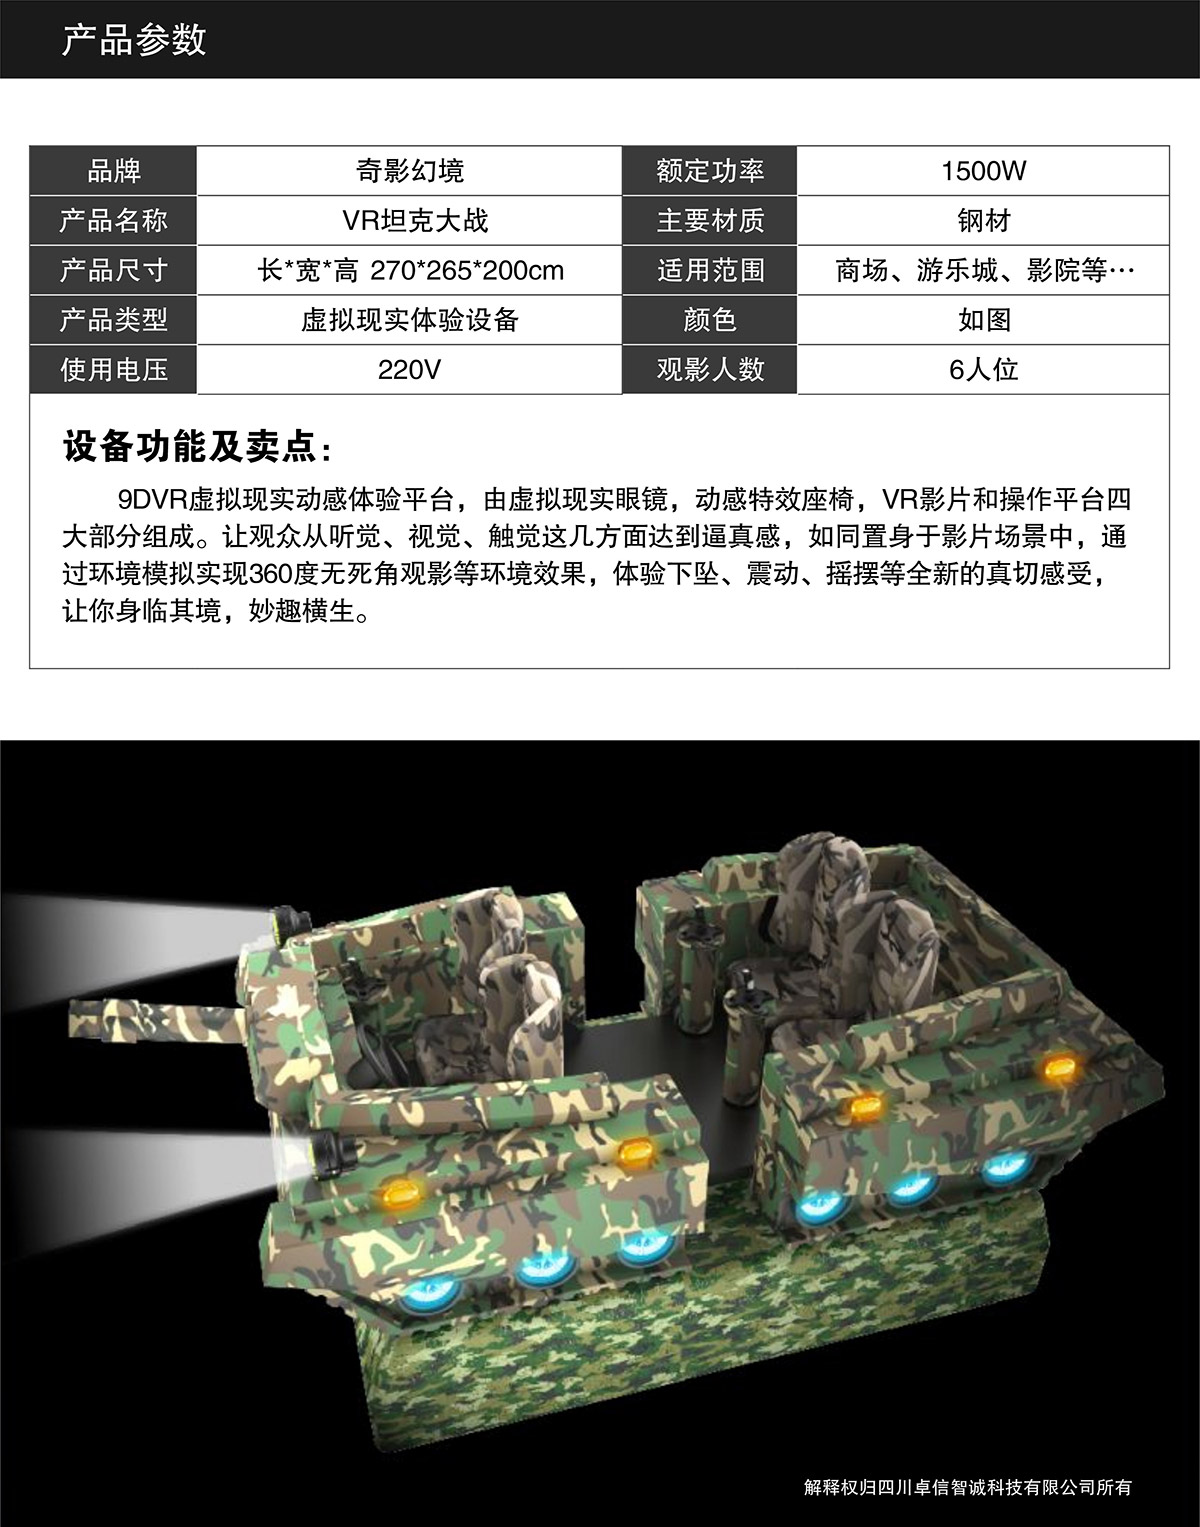 VR坦克大战产品参数.jpg